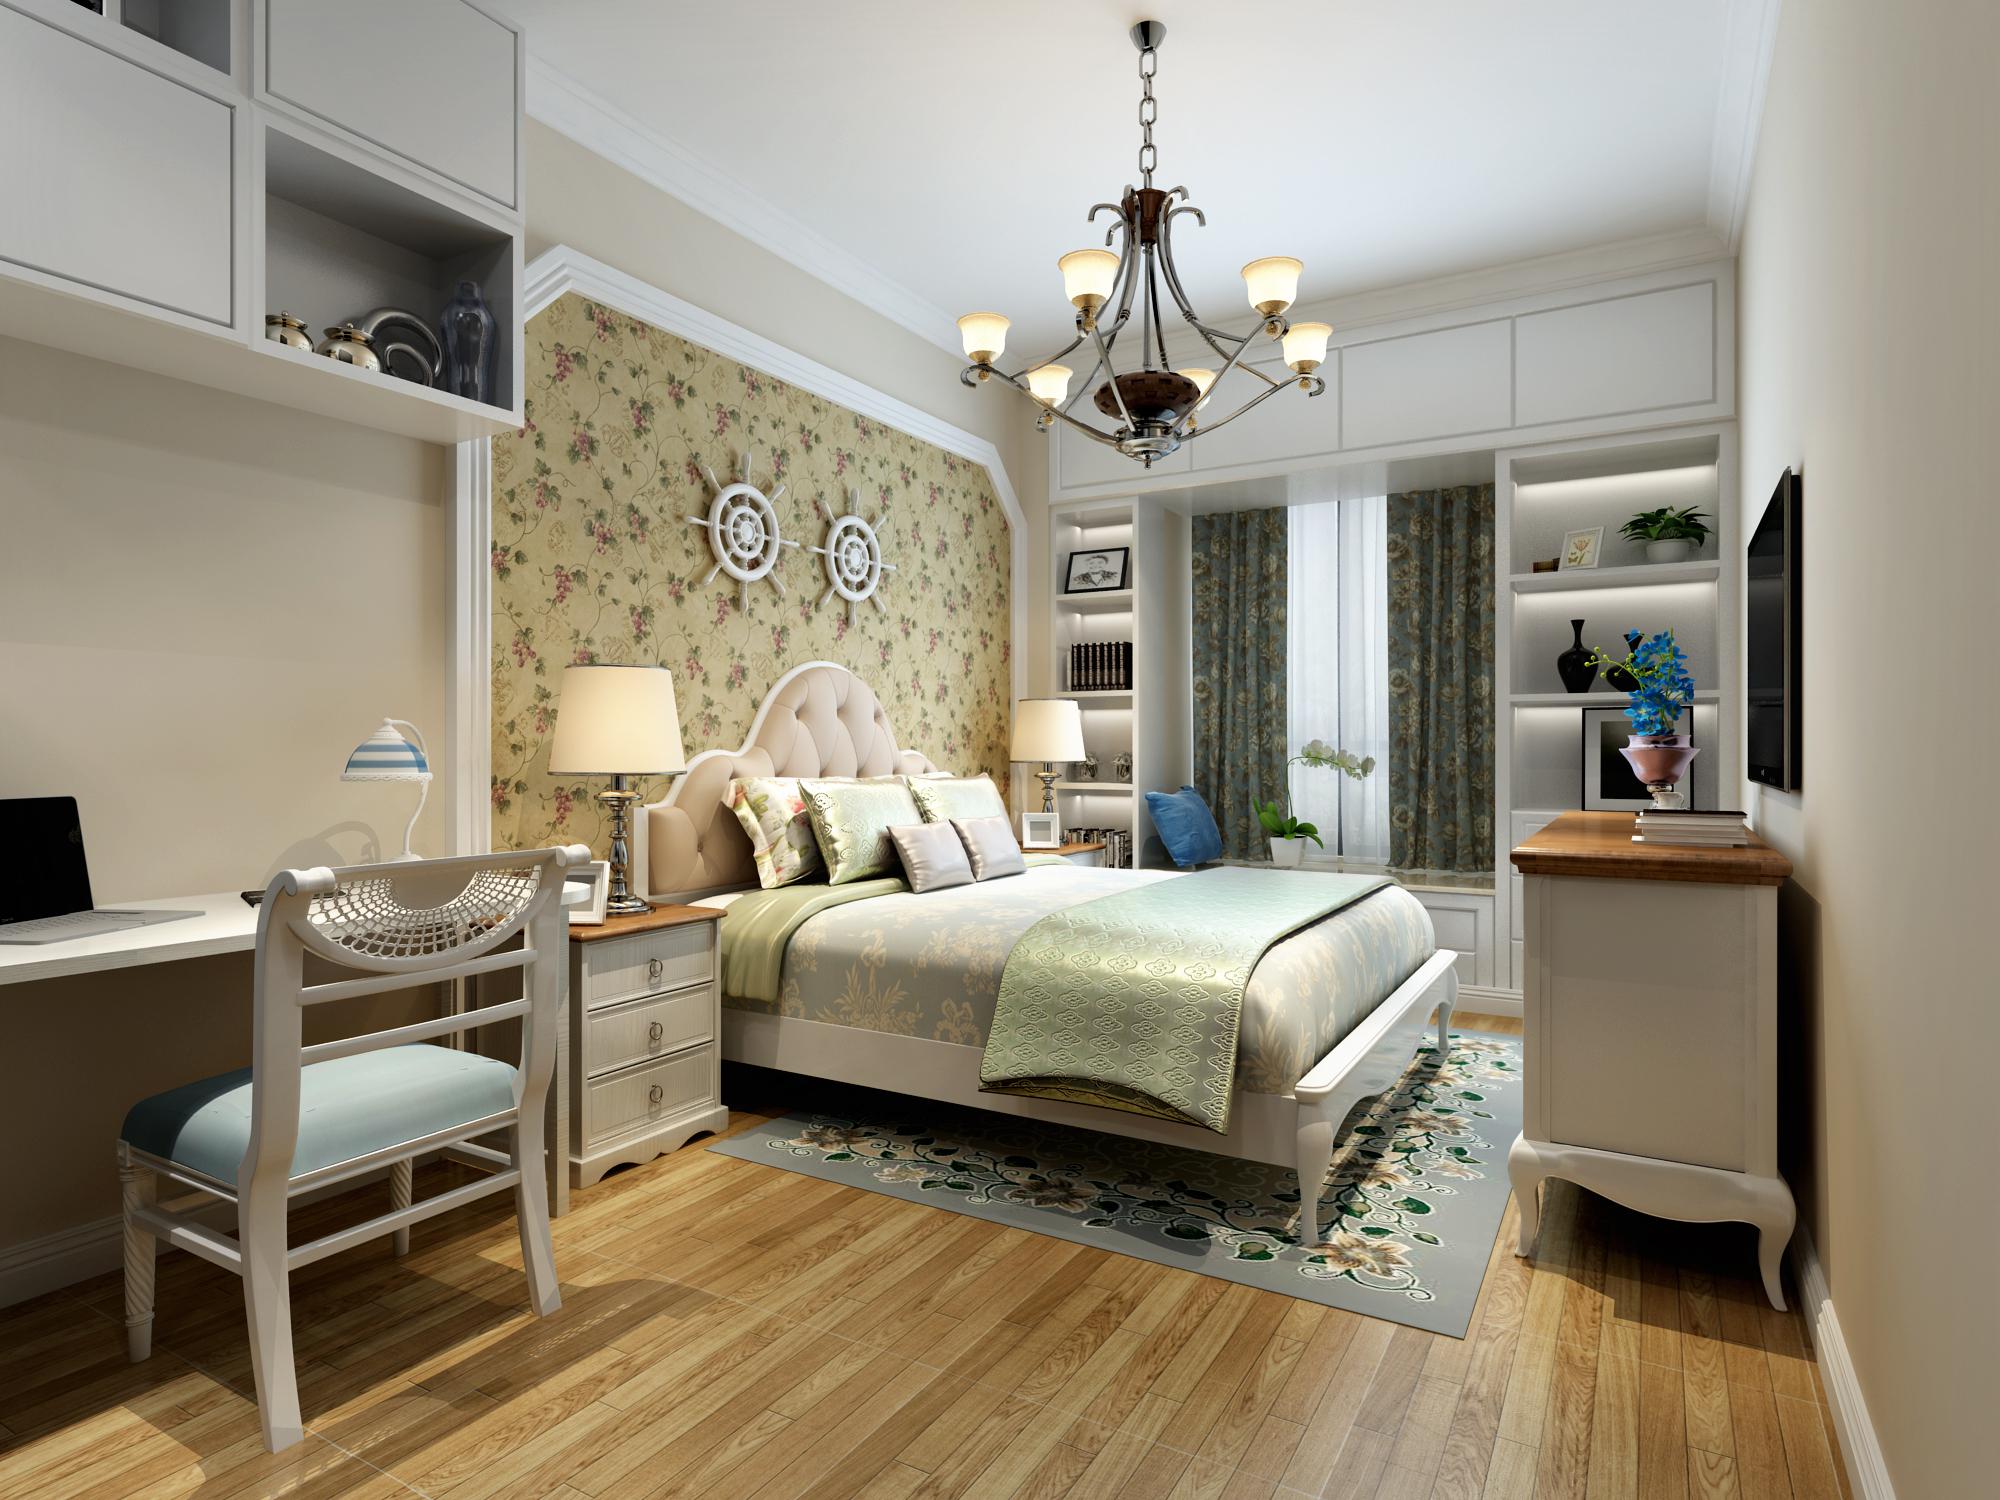 卧室布置较为温馨,作为主人的私密空间,主要以功能性和实用舒适为考虑